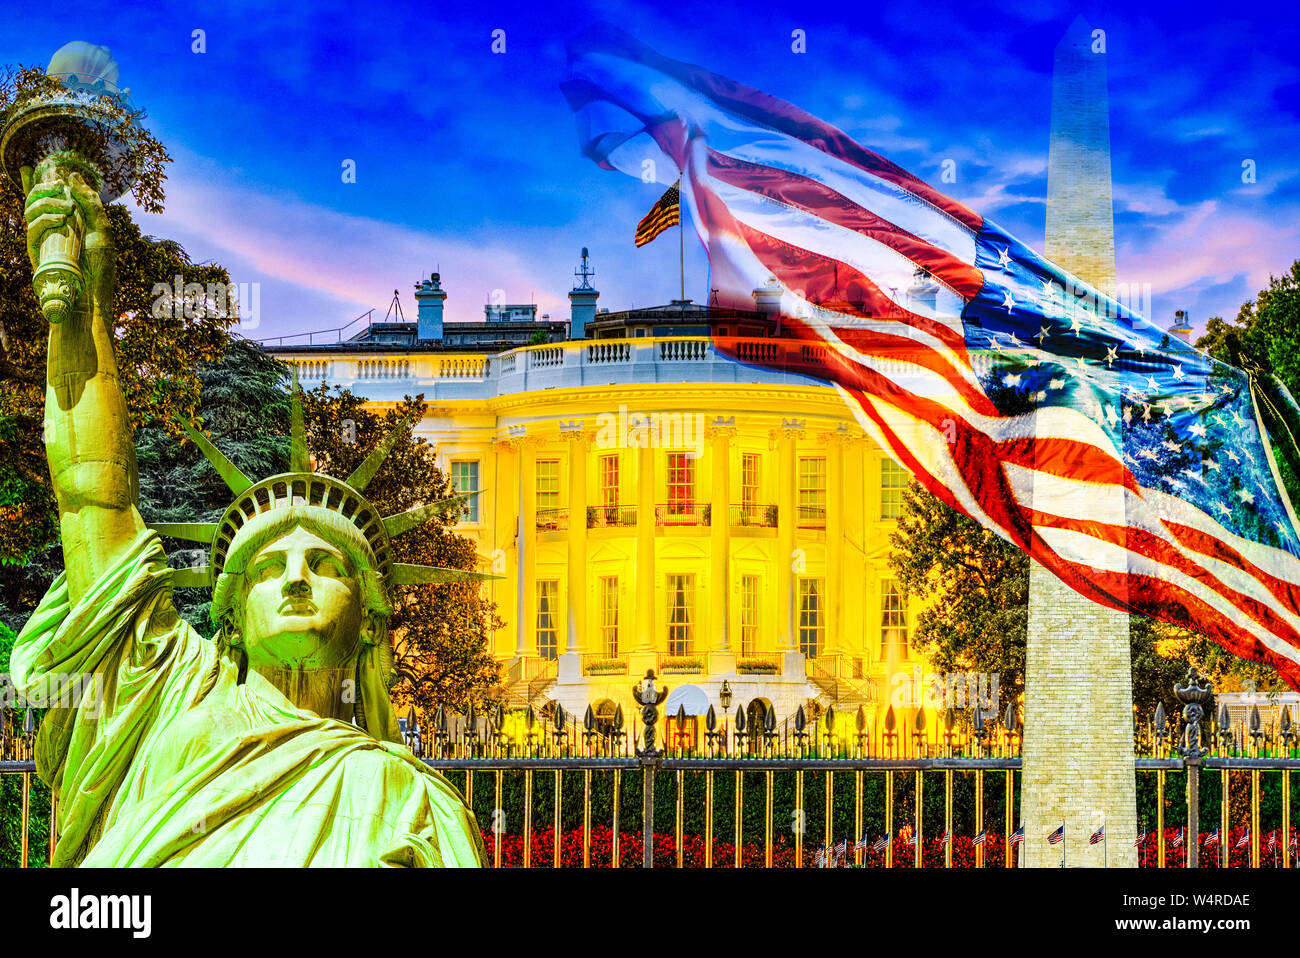 Das Weiße Haus am Abend Zeit. Washington, Vereinigte Staaten von Amerika. Stockfoto